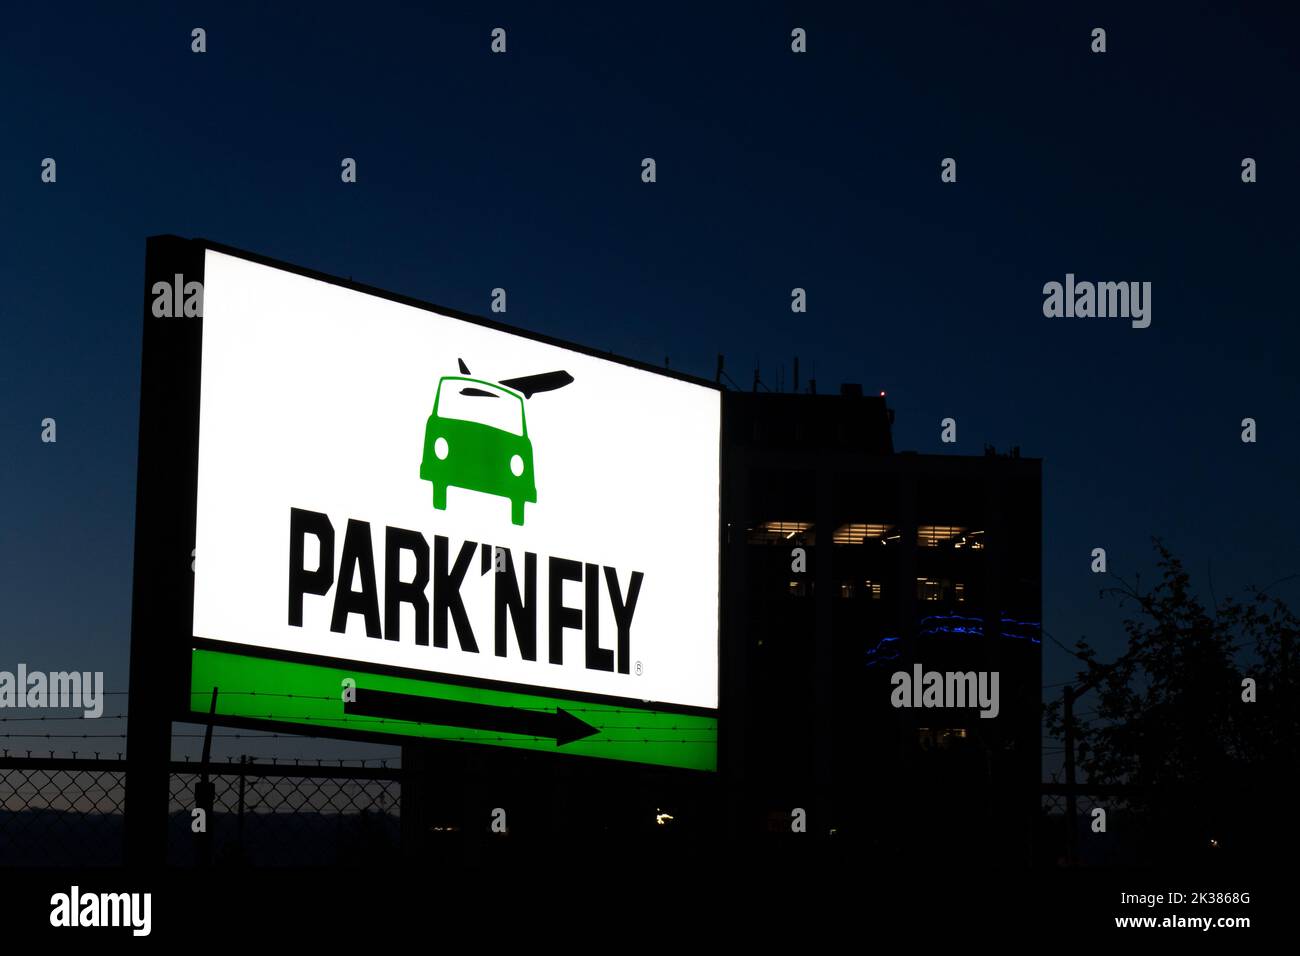 Le logo Park 'N Fly est illuminé sur un panneau près de l'aéroport Pearson de Toronto à l'aube; Park 'N Fly est une compagnie de stationnement populaire hors de l'aéroport. Banque D'Images